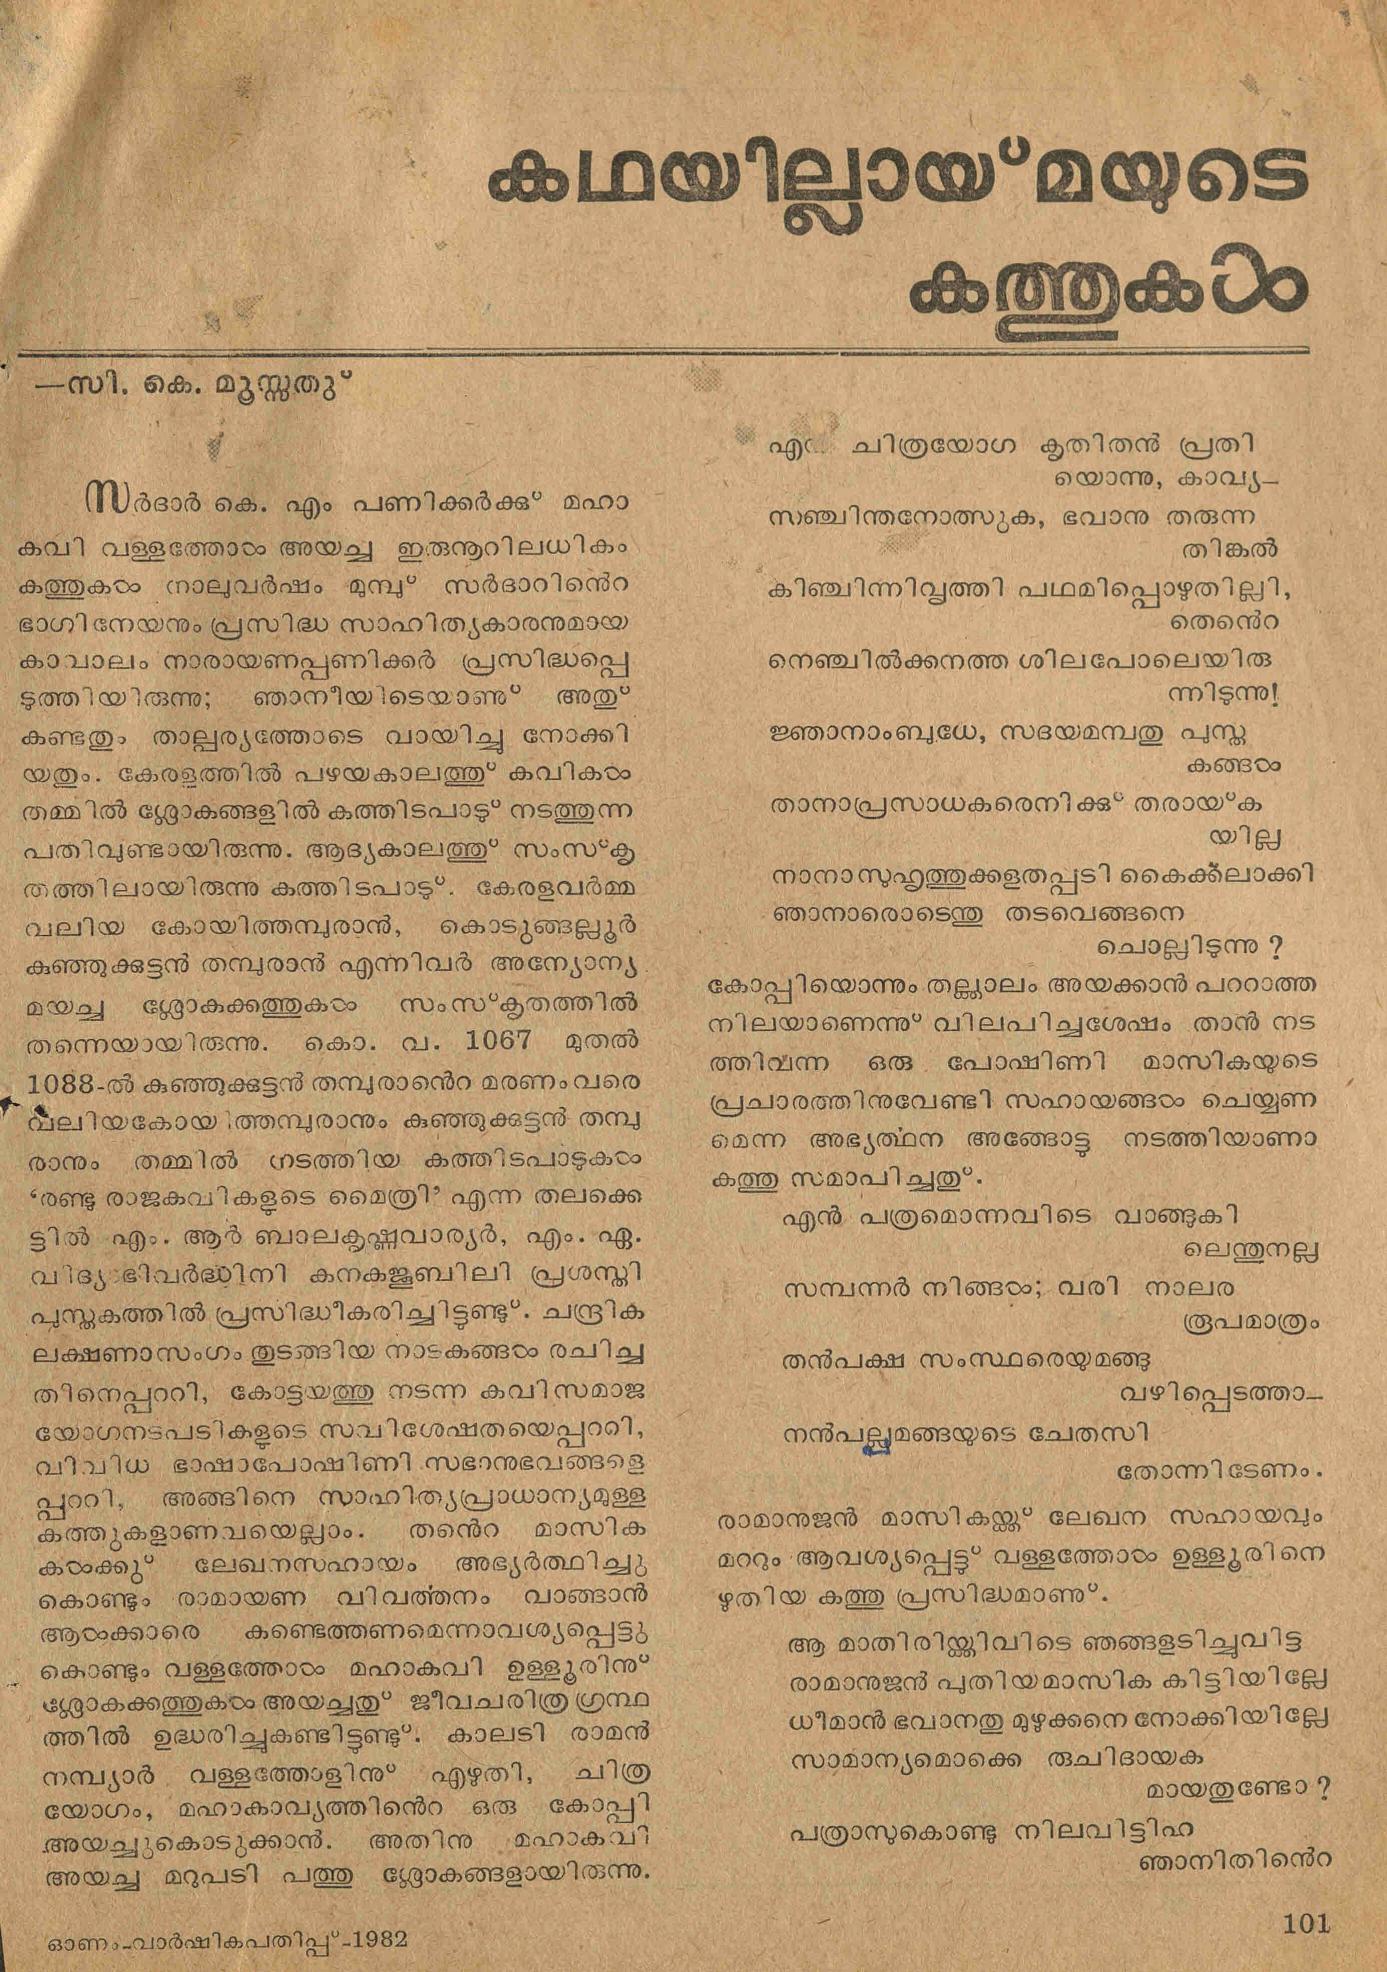  1982 - കഥയില്ലായ്മയുടെ കത്തുകൾ - സി - കെ - മൂസ്സത്